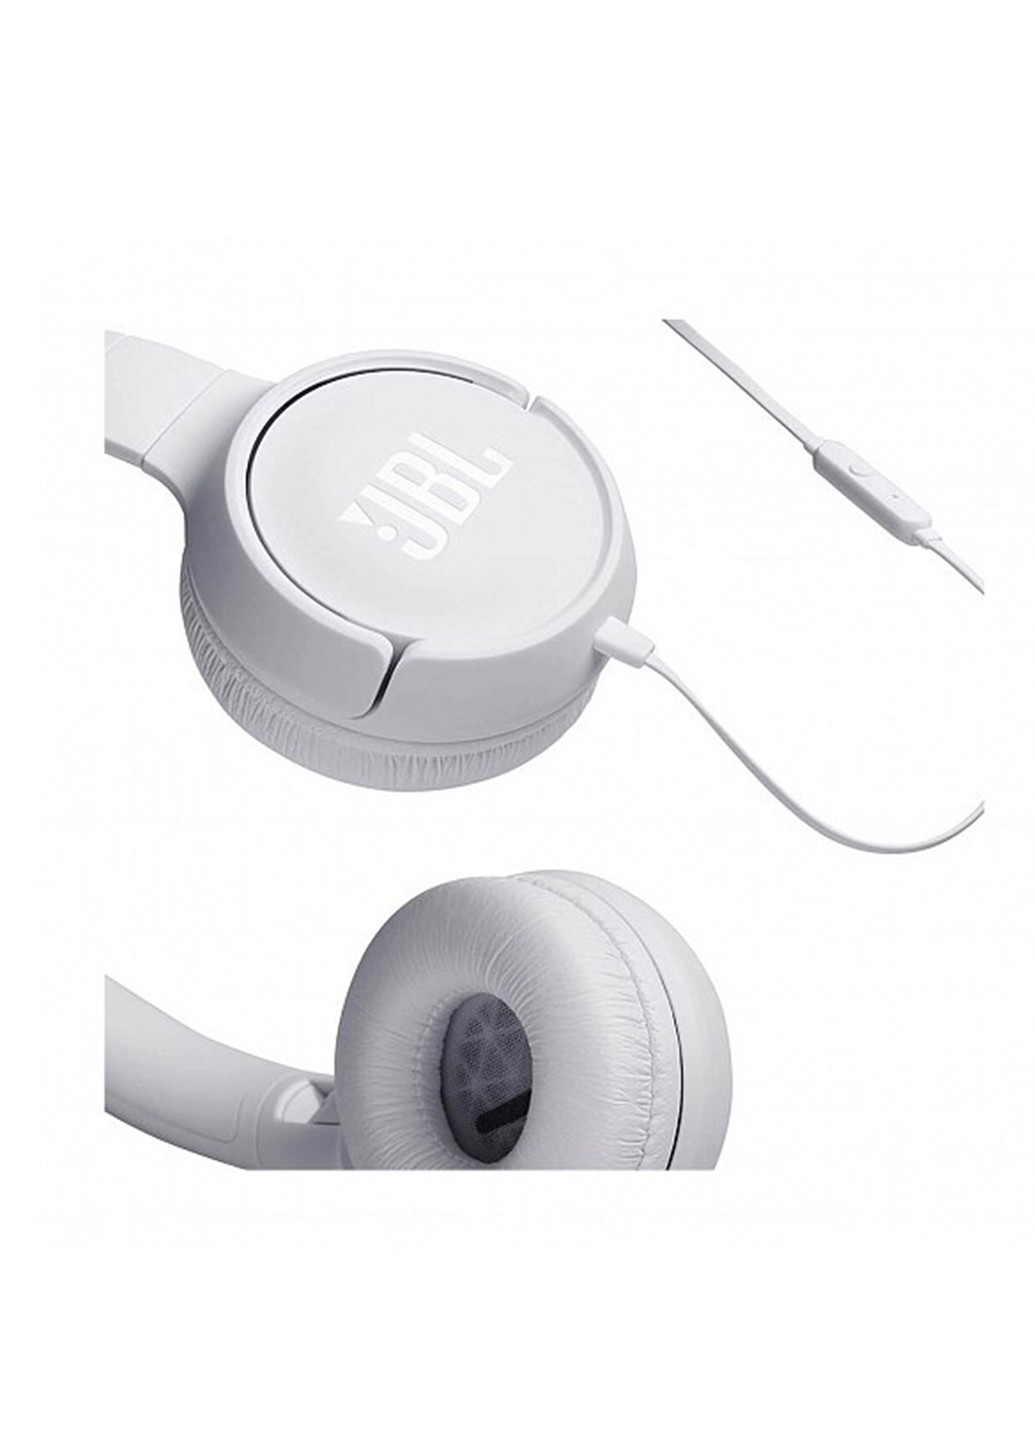 Навушники T500 White (T500WHT) JBL jblt500 (131629260)